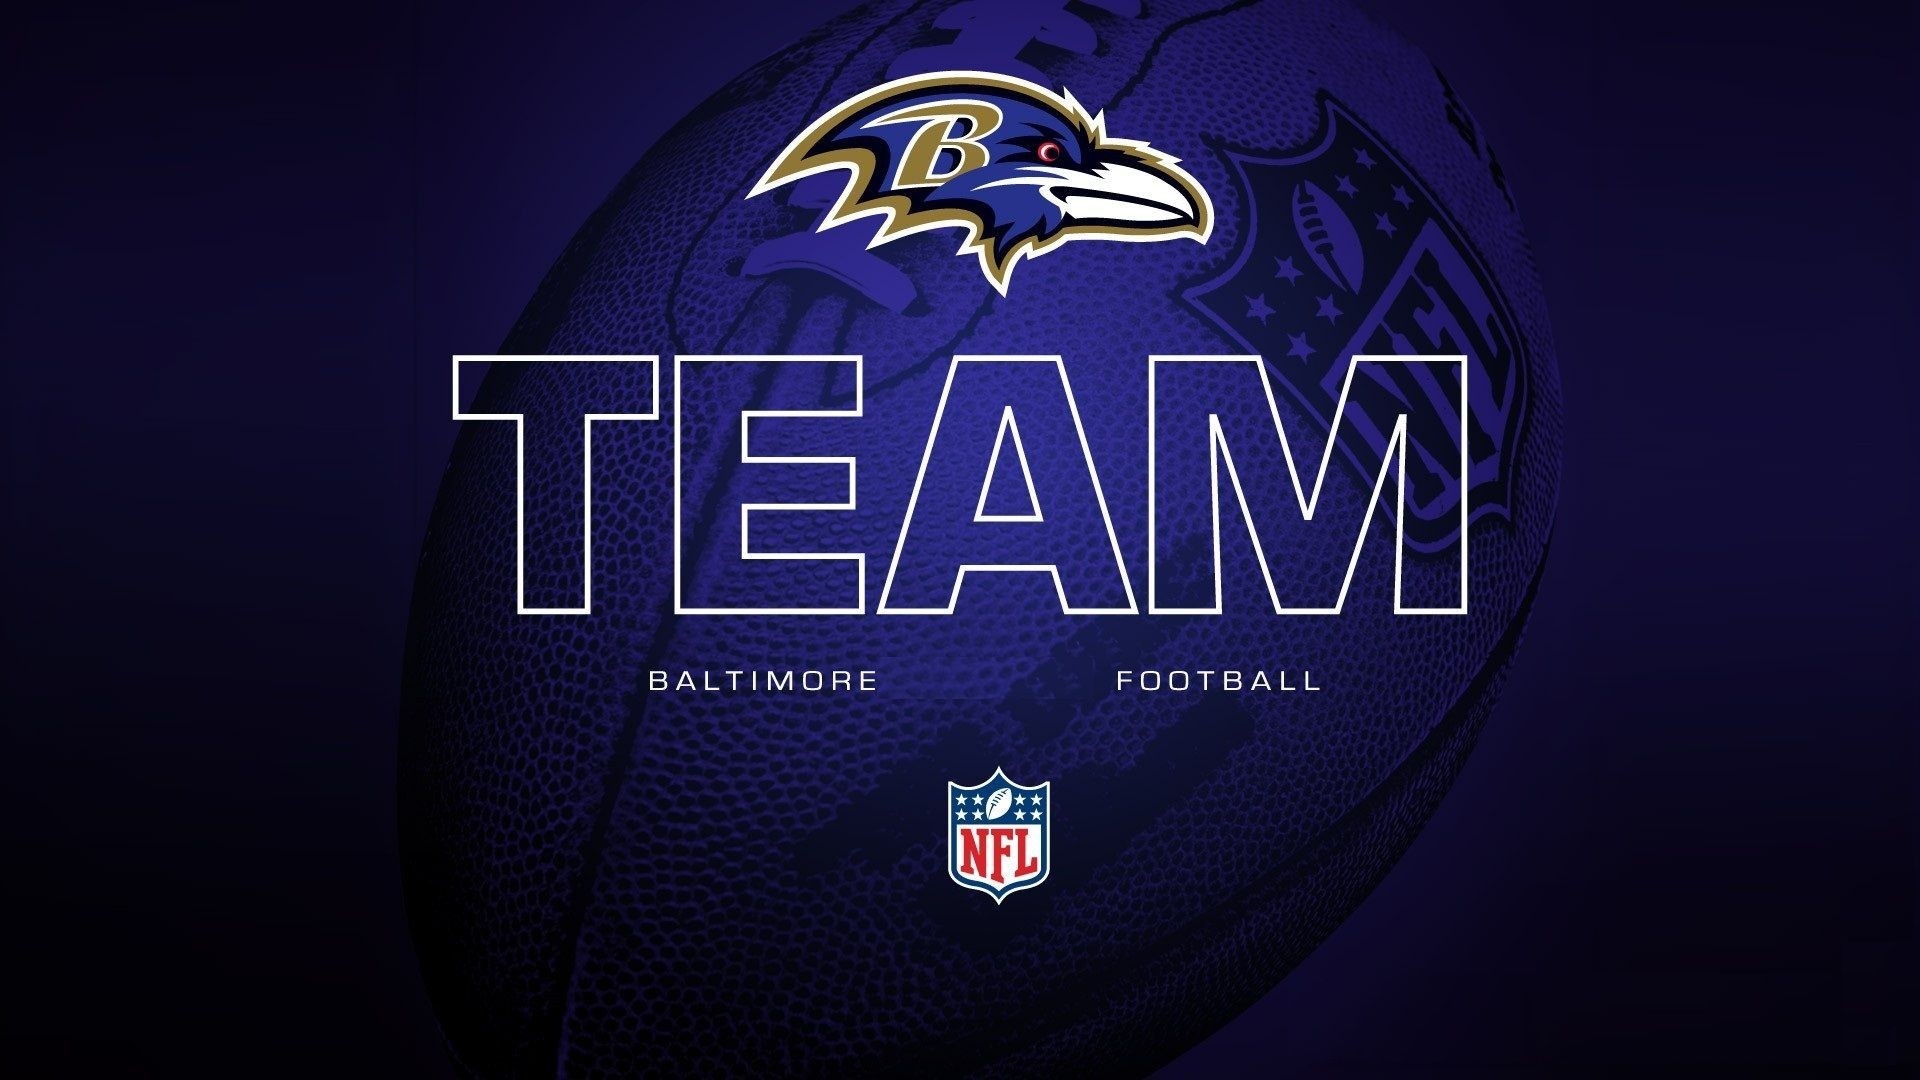 Baltimore Ravens Wallpaper image hd